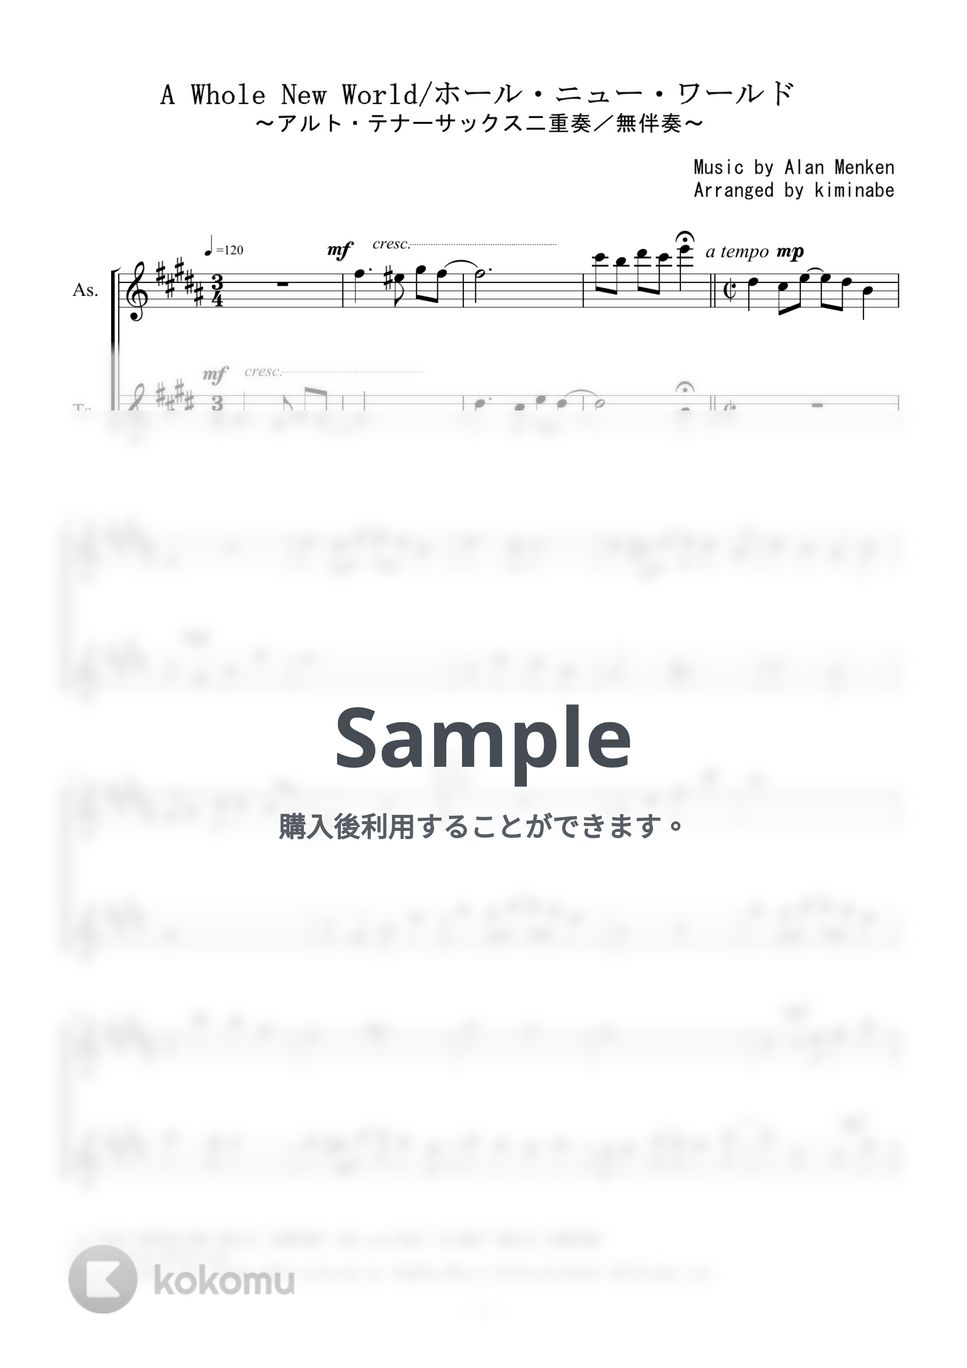 アラジン - ホール・ニュー・ワールド (アルト・テナーサックス二重奏／無伴奏) by kiminabe